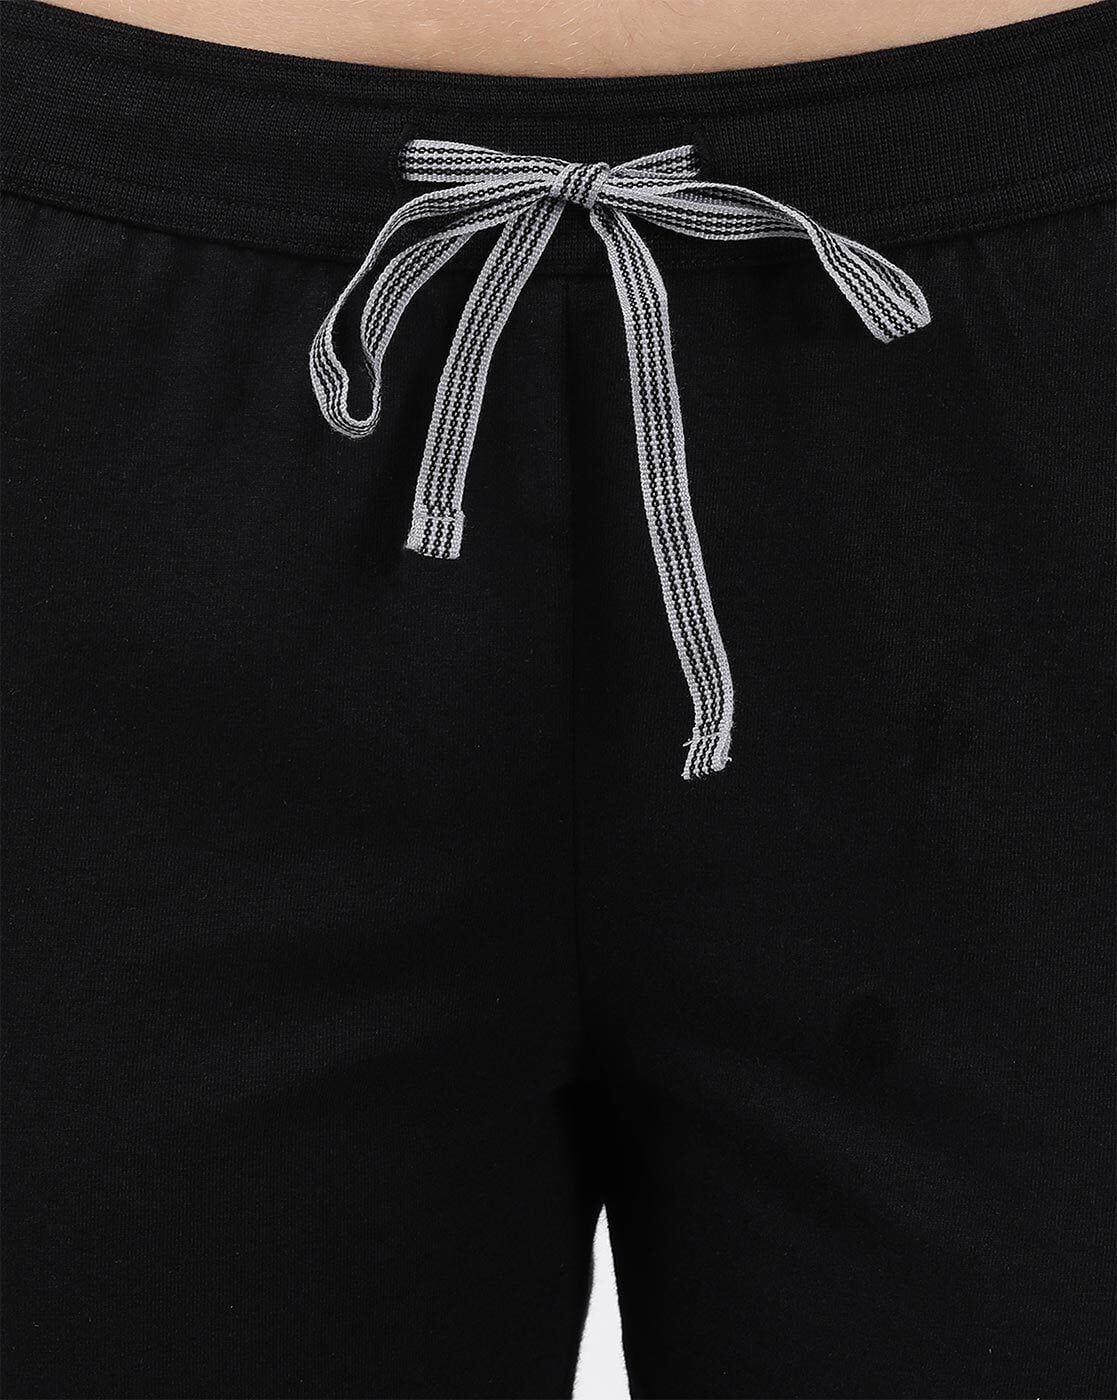 Buy Black Track Pants for Women by JOCKEY Online